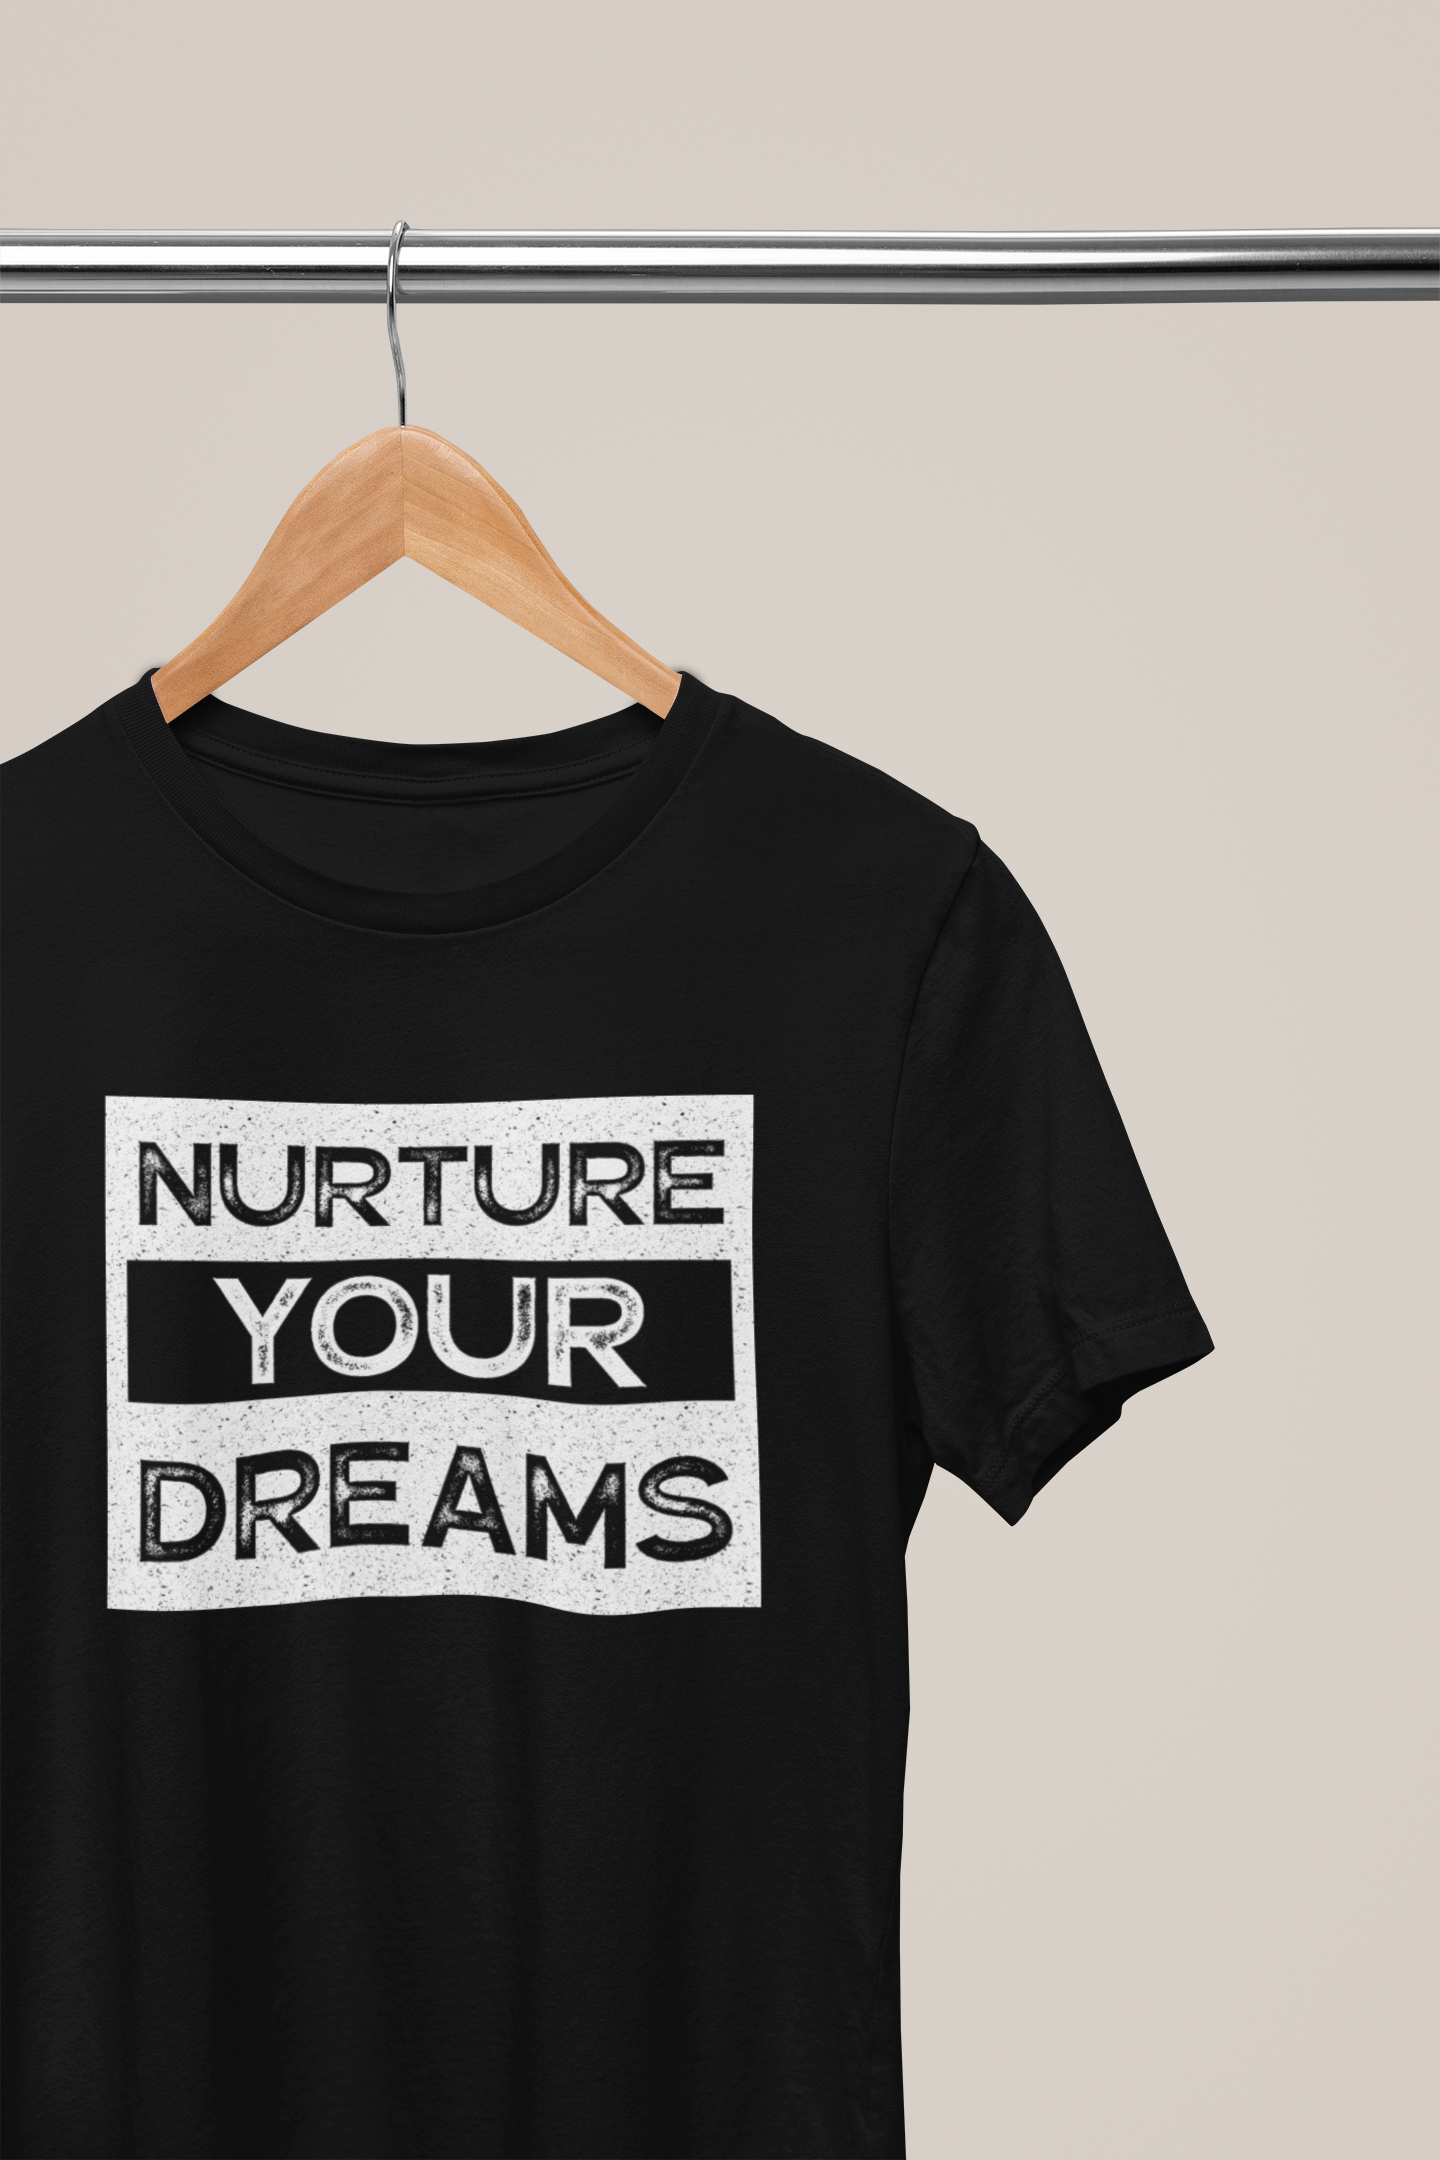 Nurture Your Dreams